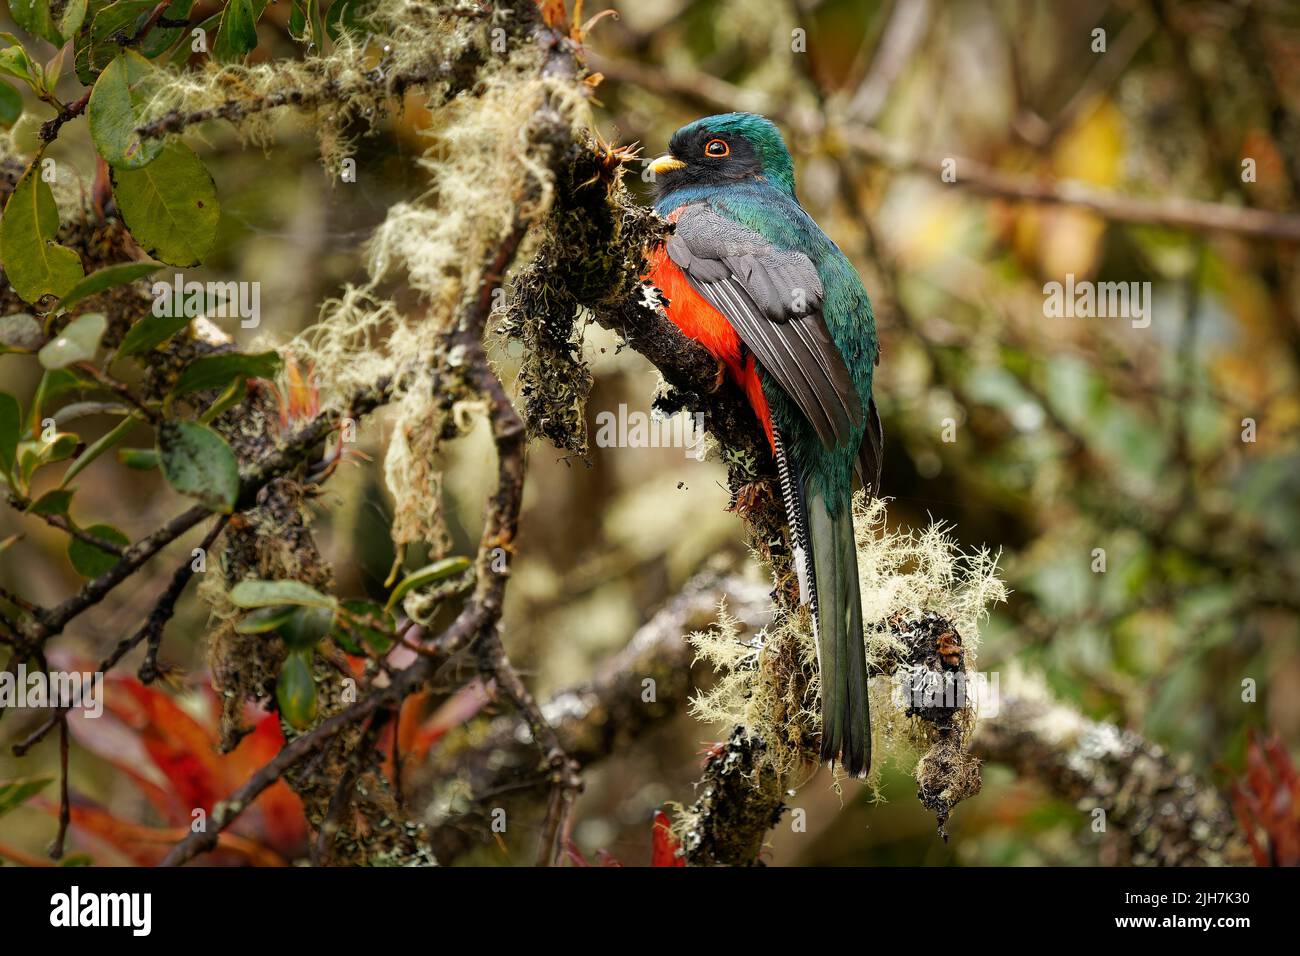 Trogon enmascarado - Trogon personatus ave verde y roja en Trogonidae, común en los bosques húmedos de las tierras altas de América del Sur, principalmente los Andes y tepuis, fe Foto de stock